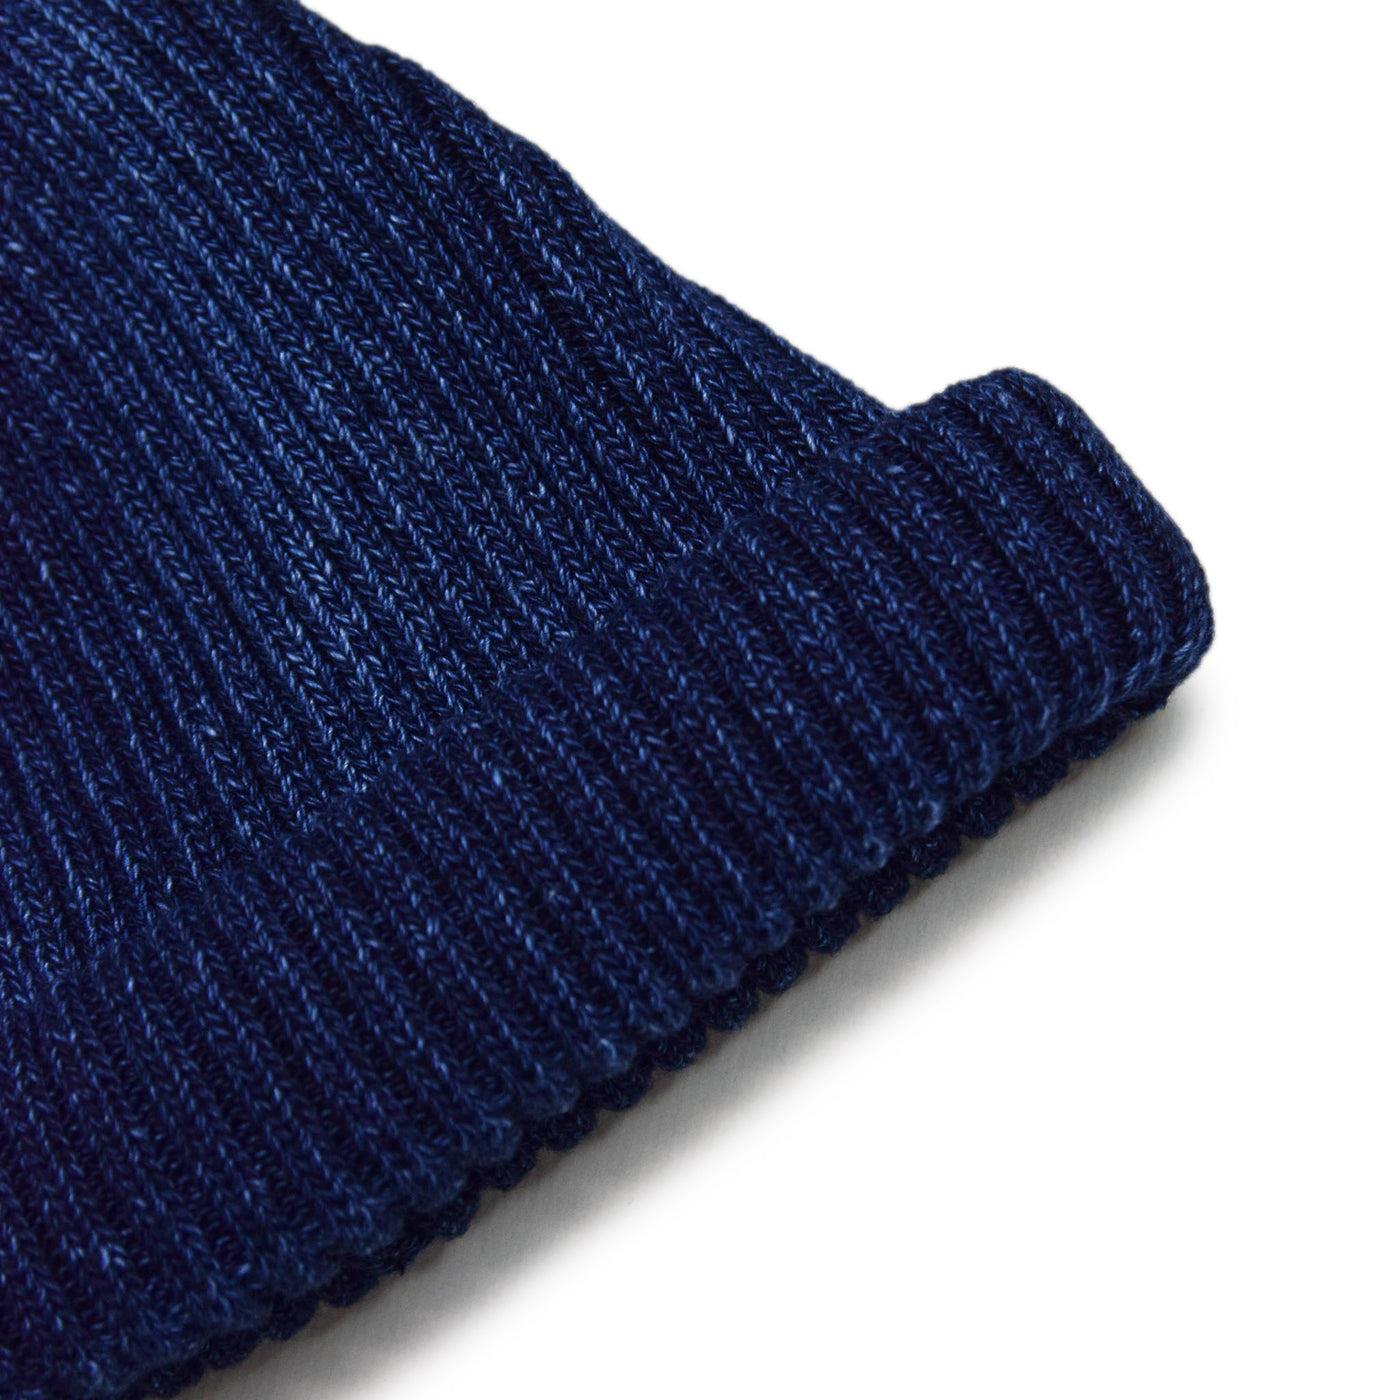 Rototo Cotton Roll Up Beanie Indigo Dyed Dark Denim knit